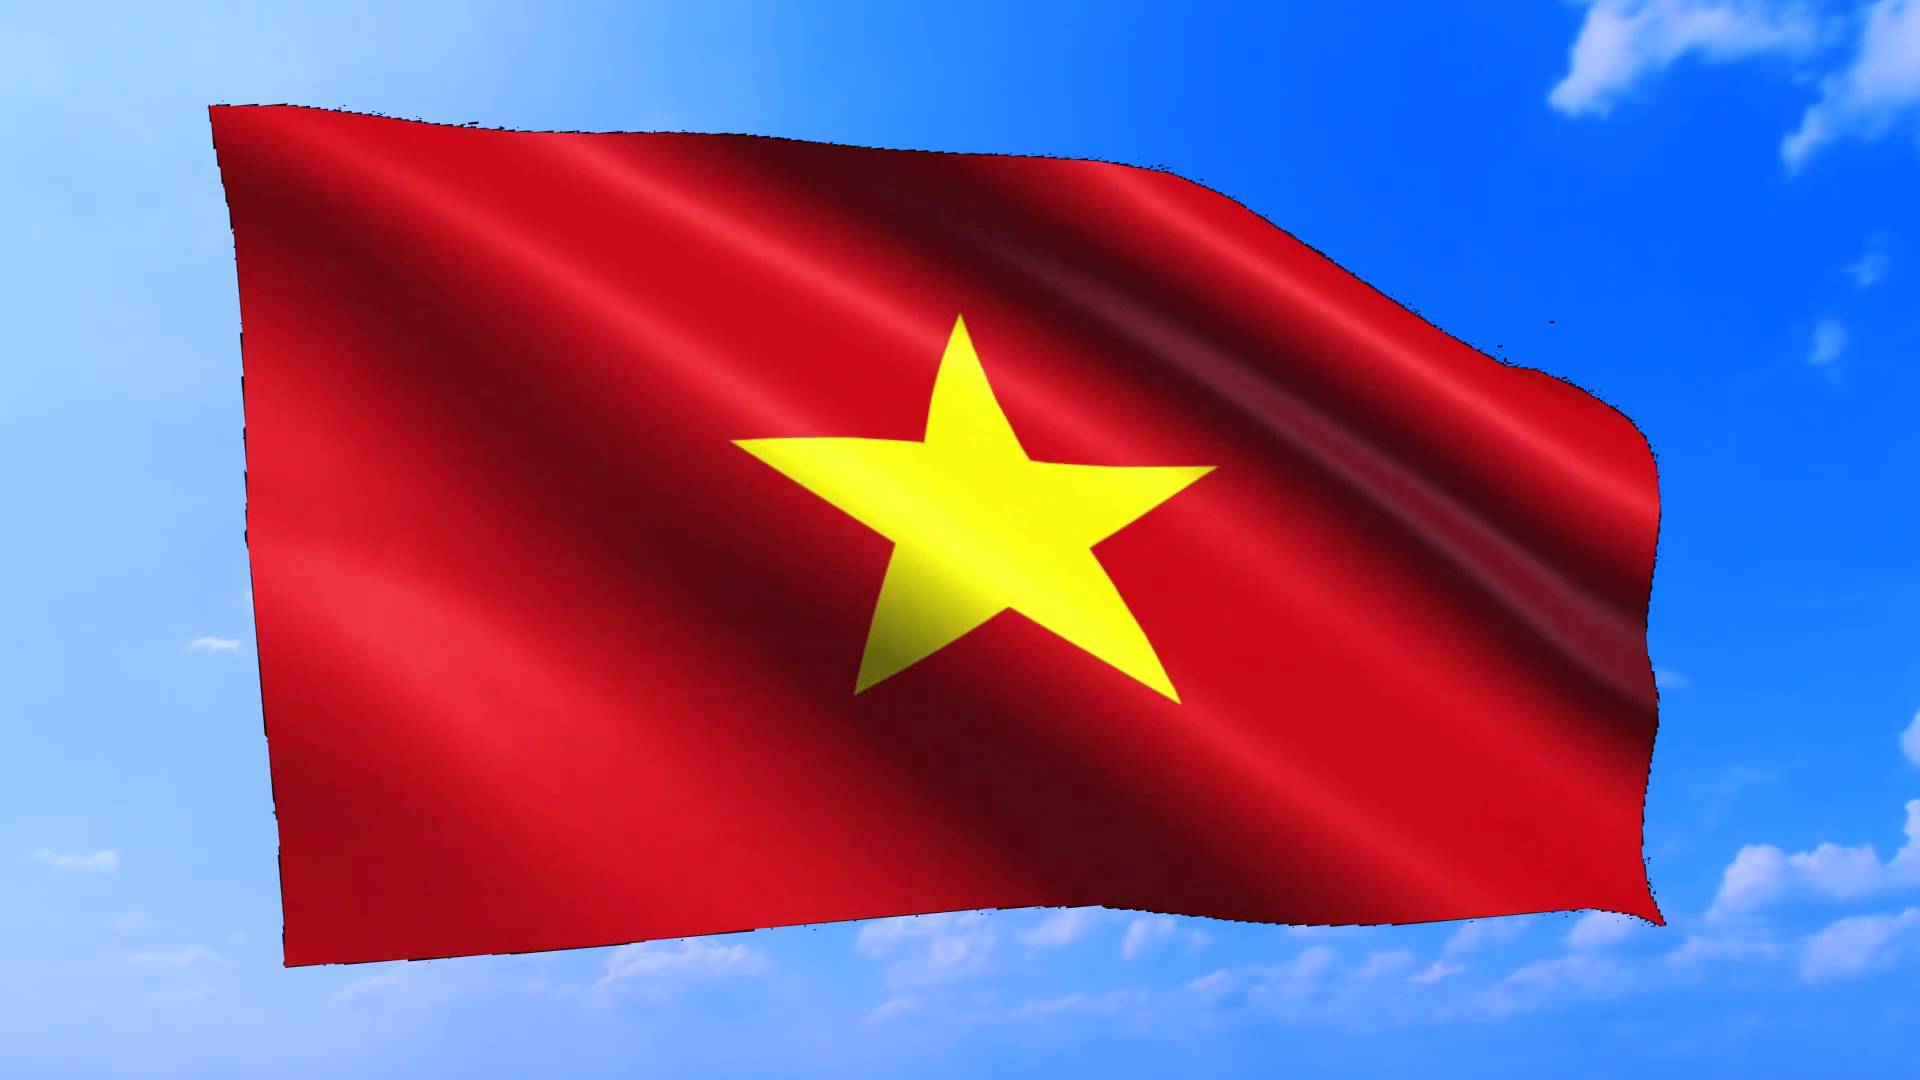 Niềm tự hào dân tộc Việt Nam luôn được truyền đạt qua các thế hệ với những giá trị văn hóa, lịch sử, truyền thống đặc sắc. Xem hình nền điện thoại liên quan để bắt đầu một ngày mới với tinh thần tự hào và yêu quê hương.